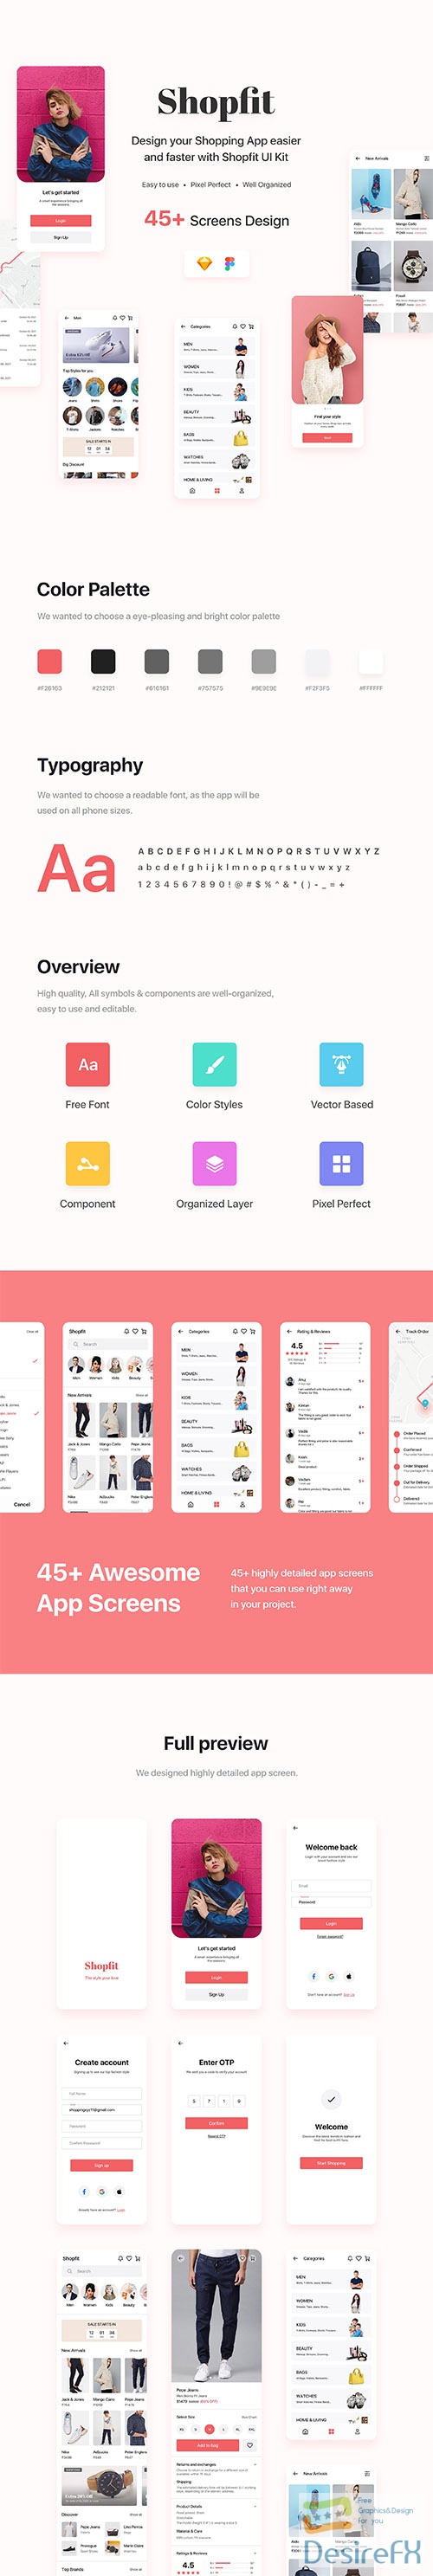 Shopfit - Shopping App UI Kit UI8